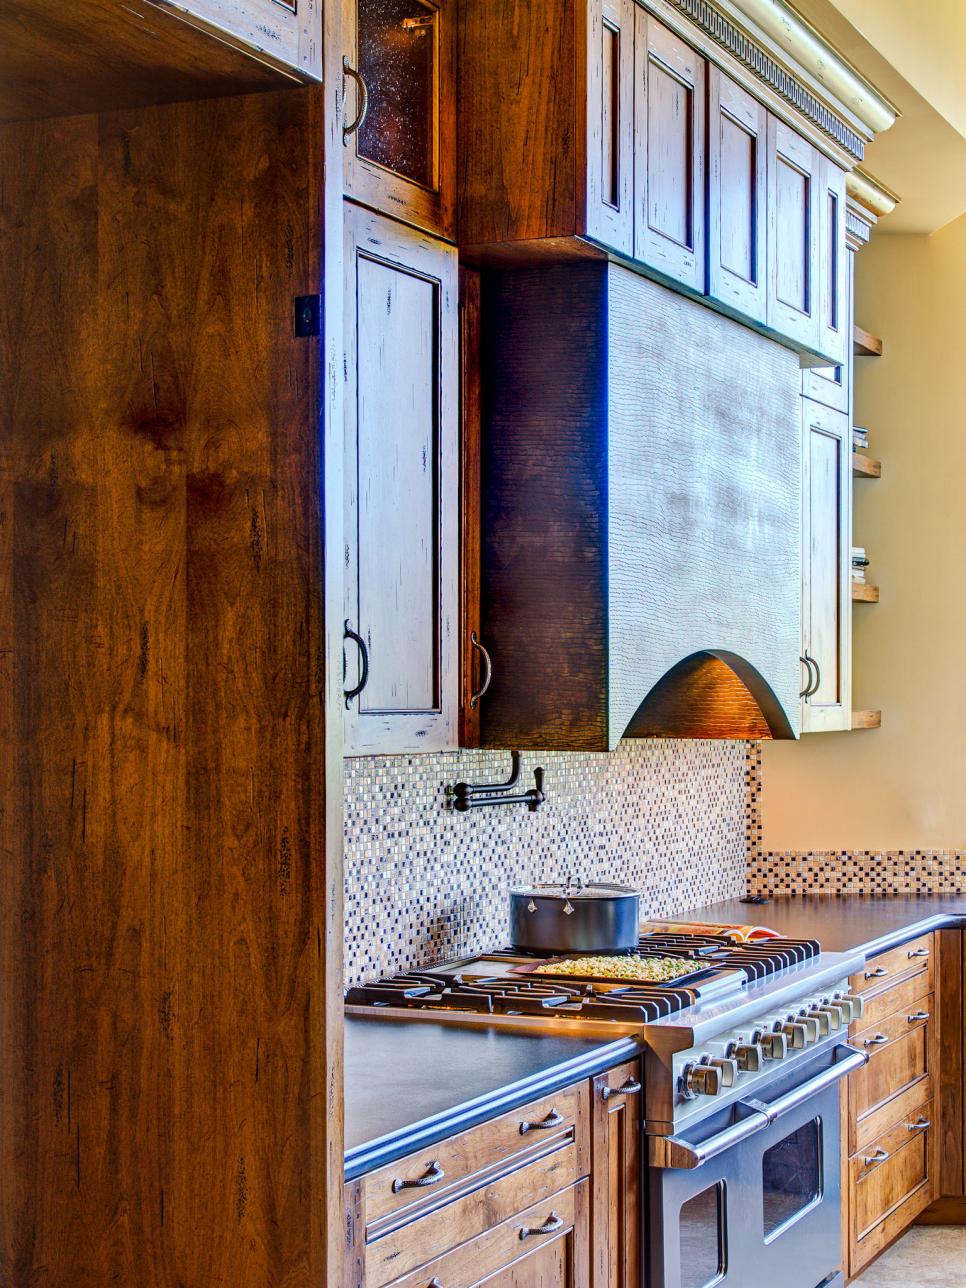 Southwestern Kitchen With Mosaic Tile Backsplash